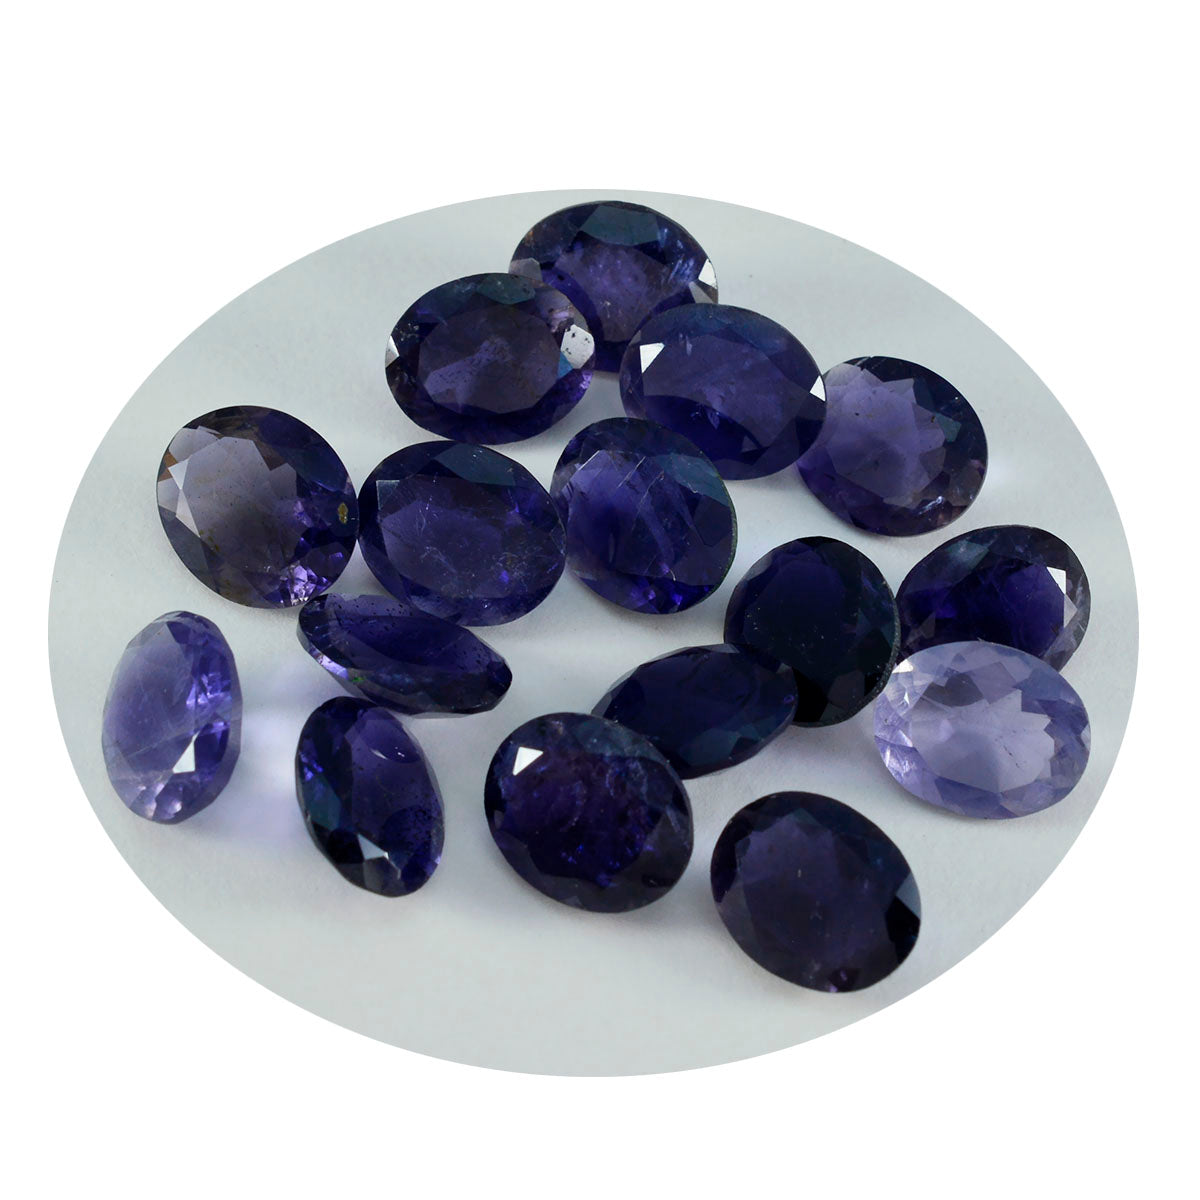 riyogems 1шт синий иолит ограненный 6x8 мм овальной формы милый качественный камень